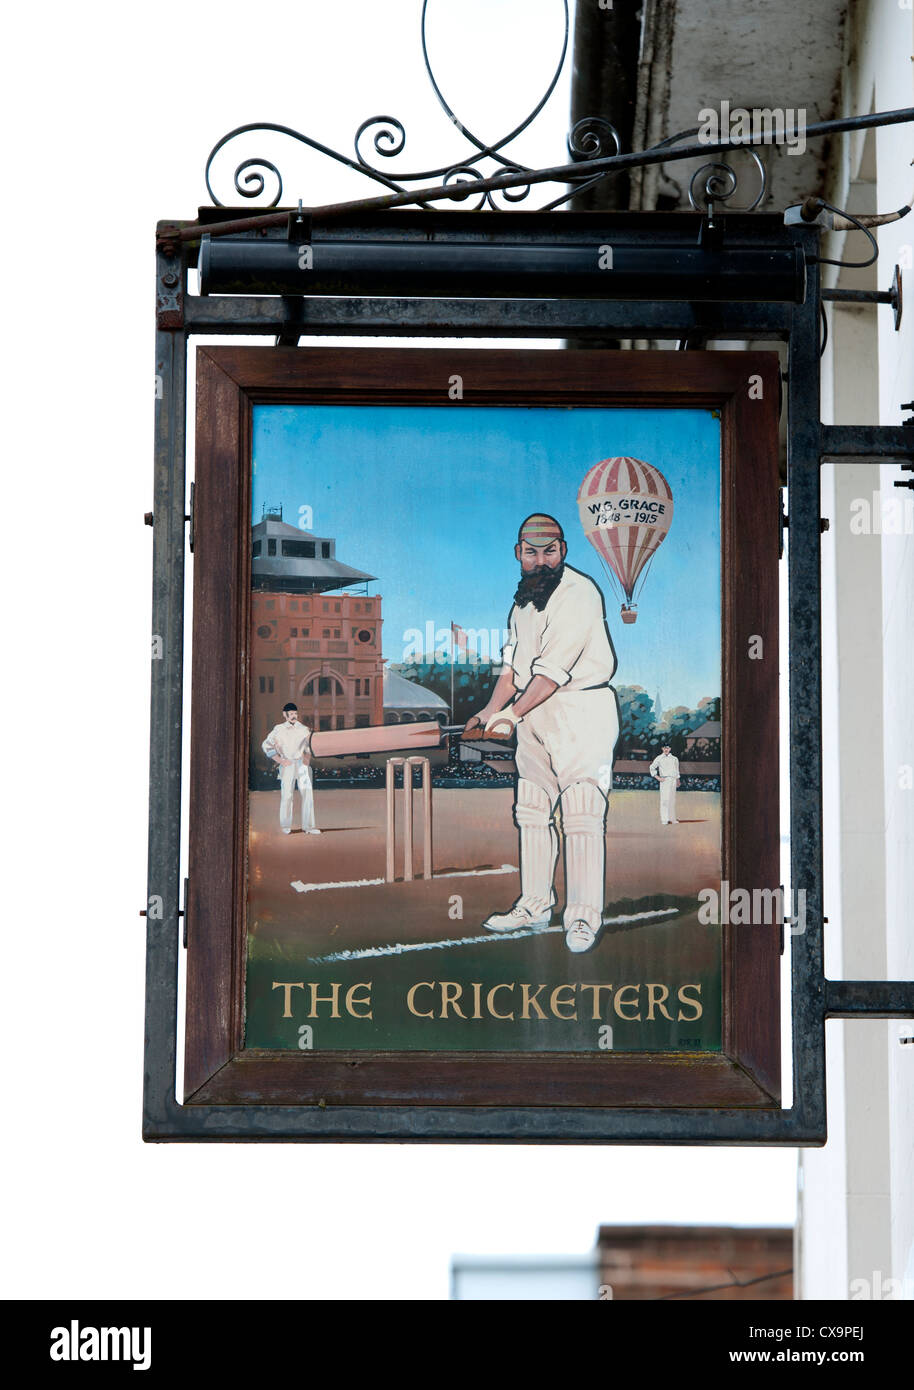 Le Cricketers enseigne de pub, Leamington Spa, Royaume-Uni Banque D'Images